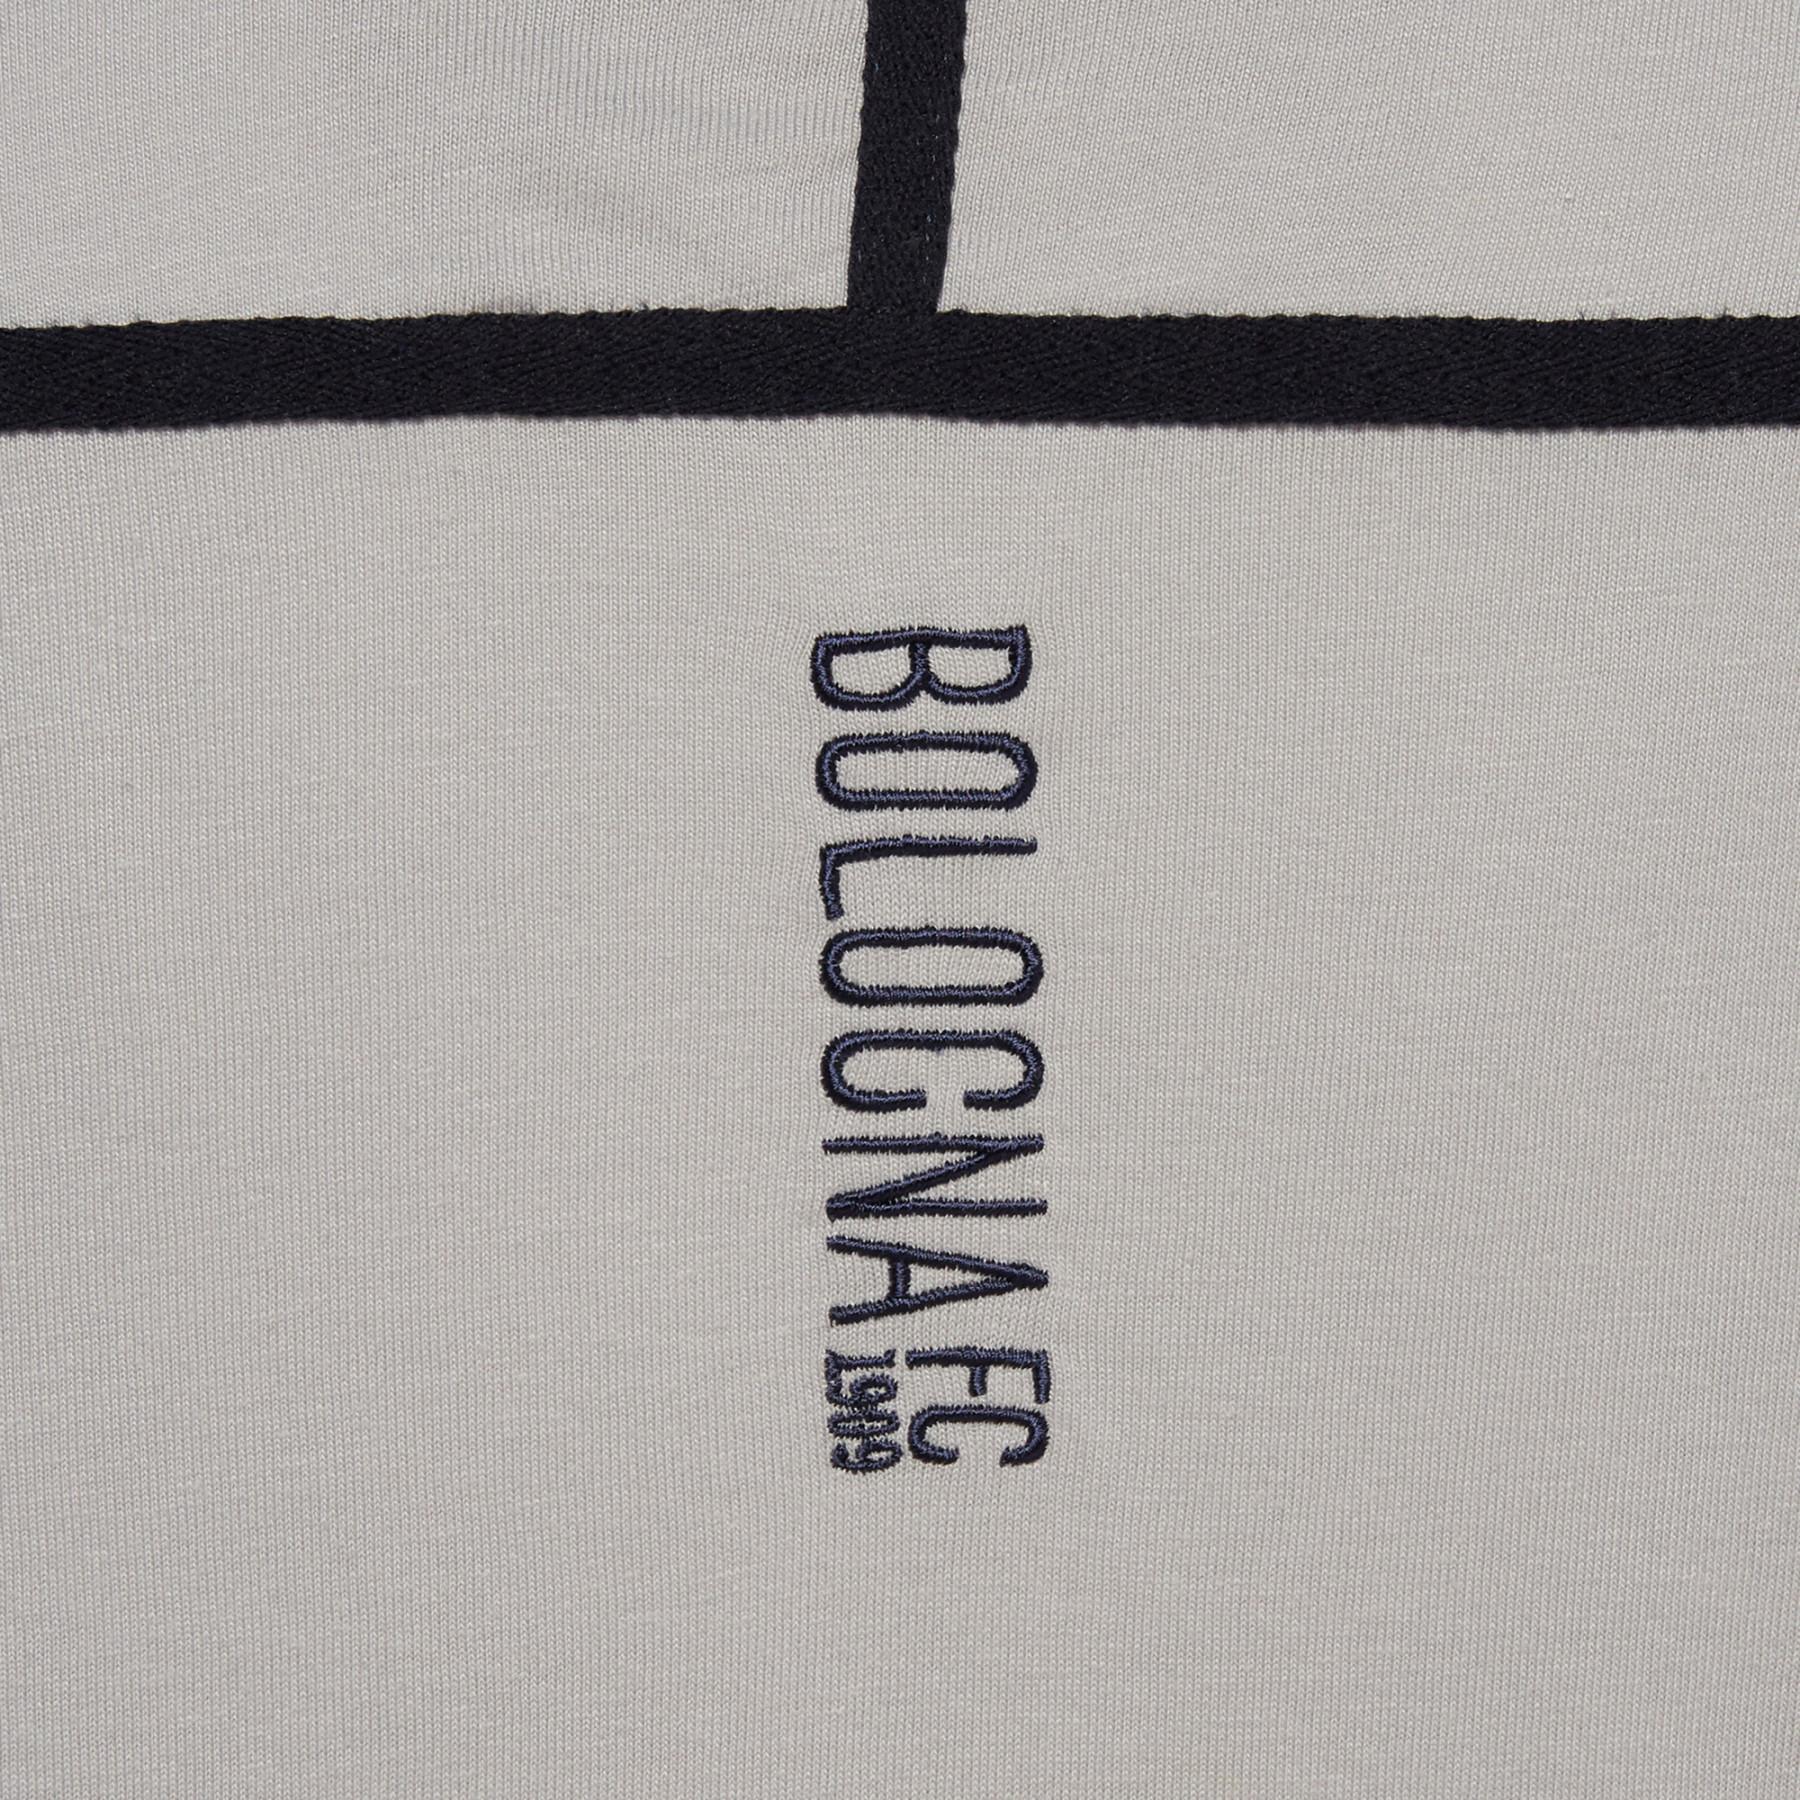 Camiseta para niños Bologne 2018/19